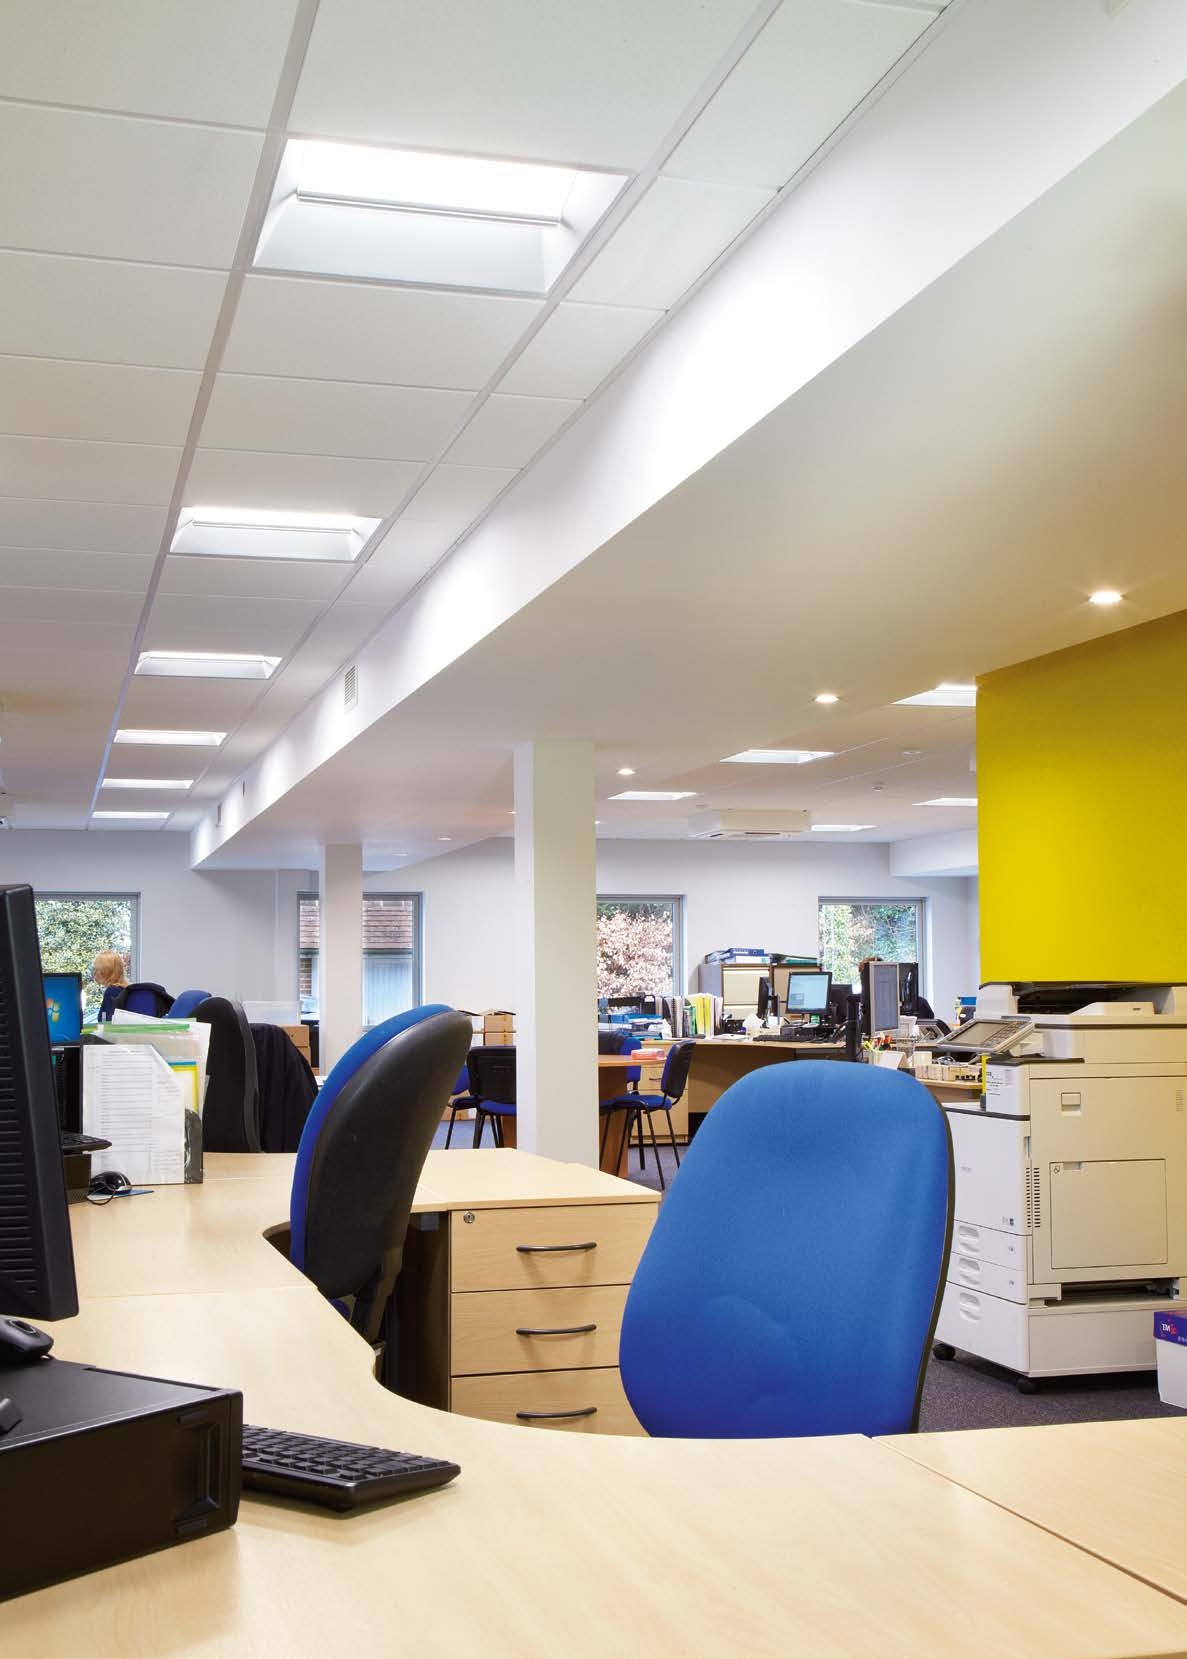 Aplicaciones empresariales Oficinas con amplios espacios La iluminación confortable y eficiente, la mejor solución para los espacios de trabajo Los estudios demuestran que la luz de baja calidad,